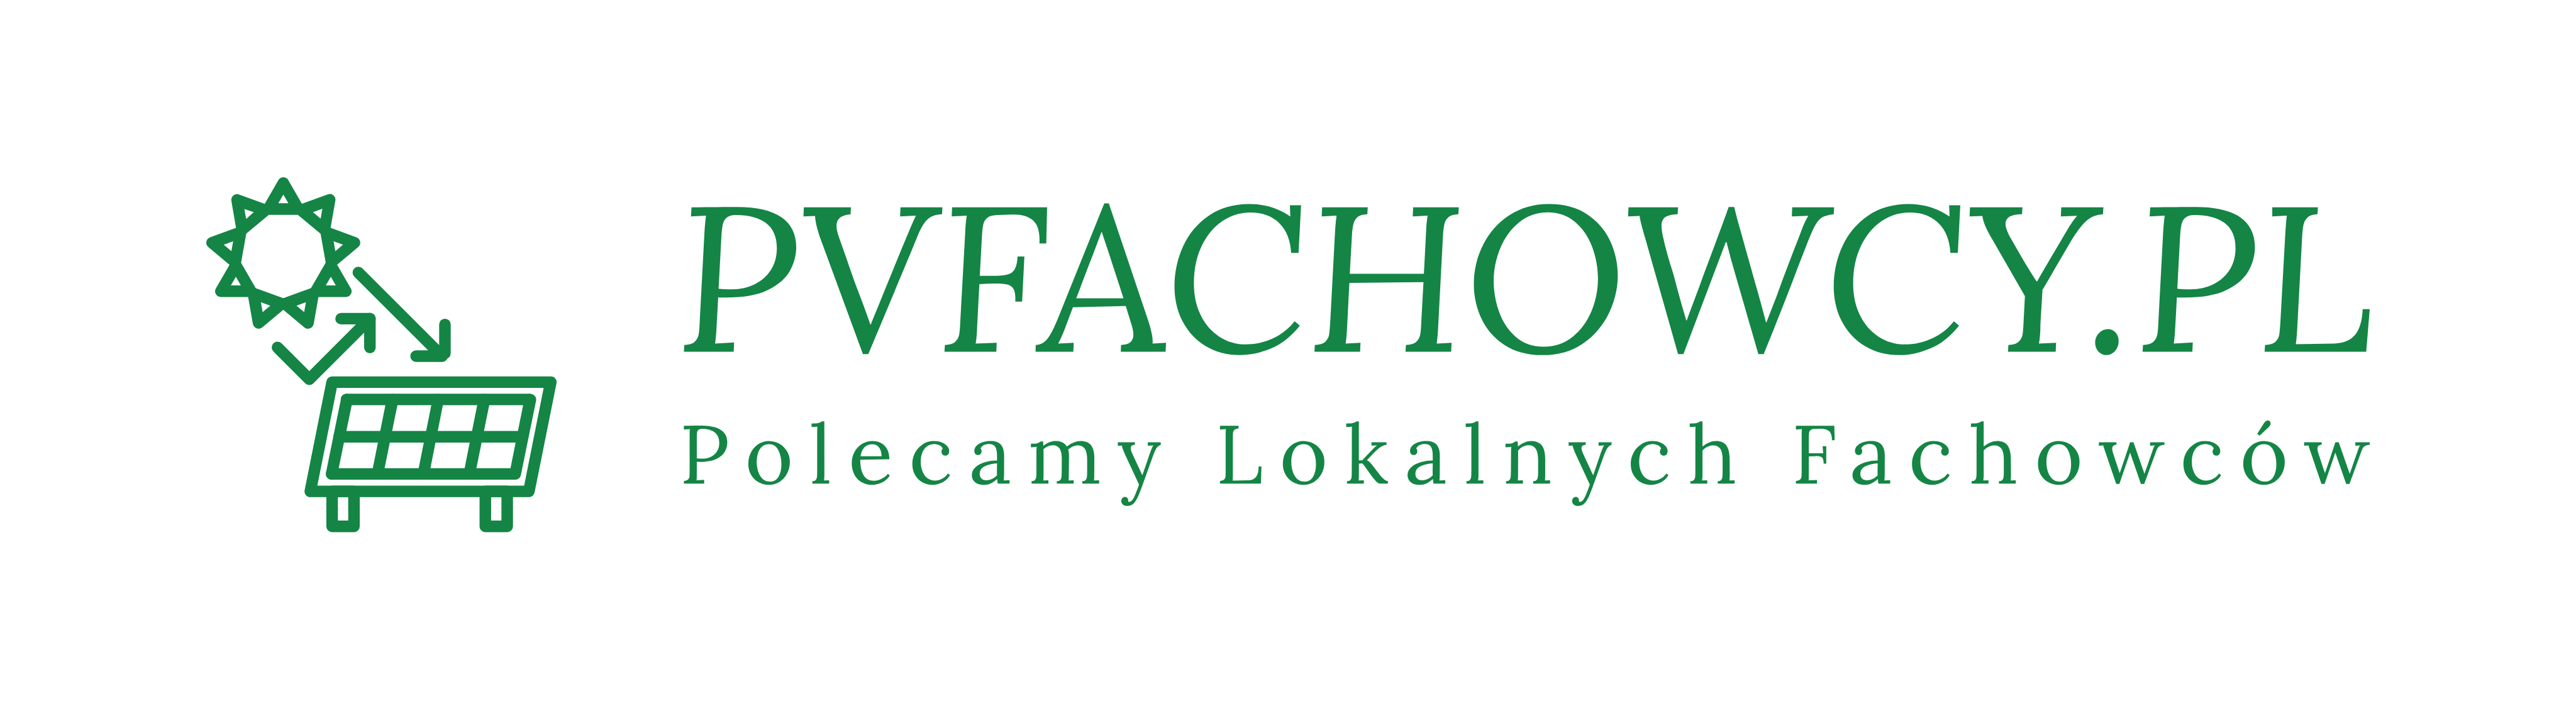 Logo PVFACHOWCY: Przejrzyste i nowoczesne, symbolizujące ekspertyzę w branży fotowoltaicznej.